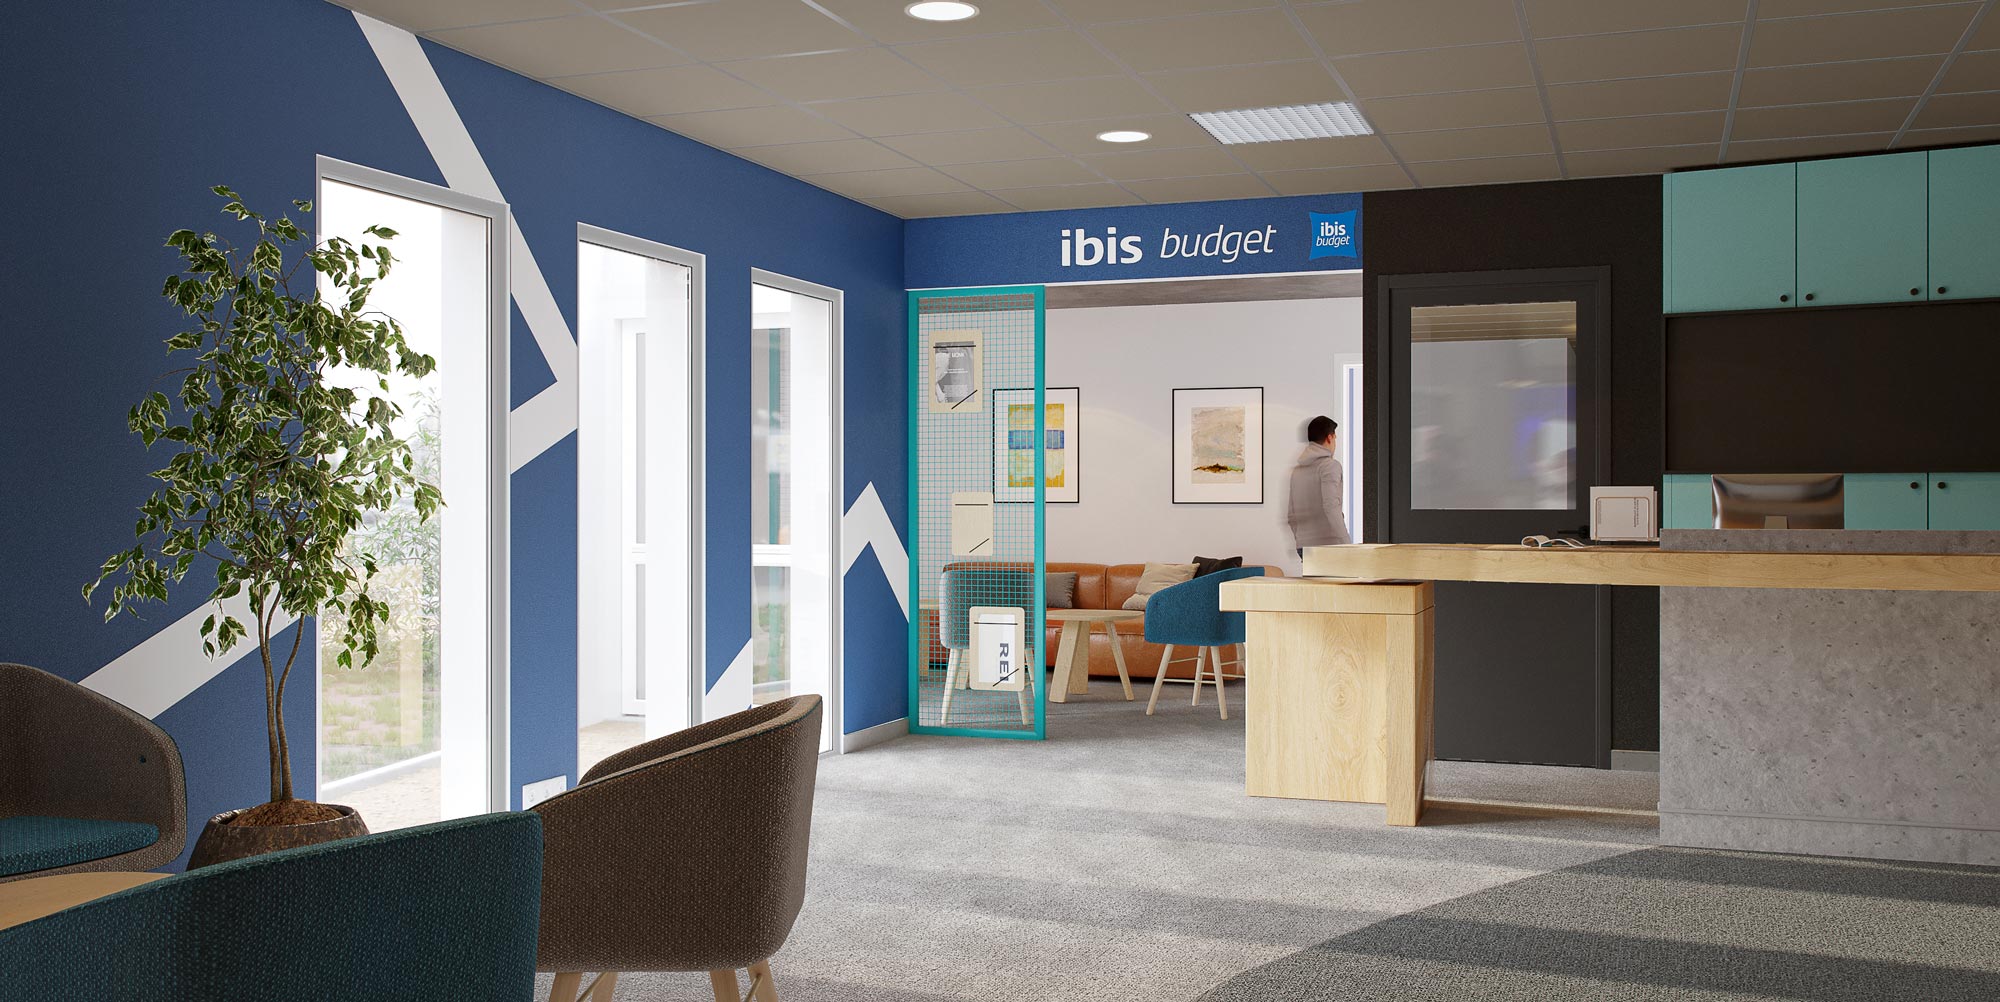 Perspective de l'accueil de l'hôtel Ibis Budget de Pontivy réalisé par Option d'Intérieur